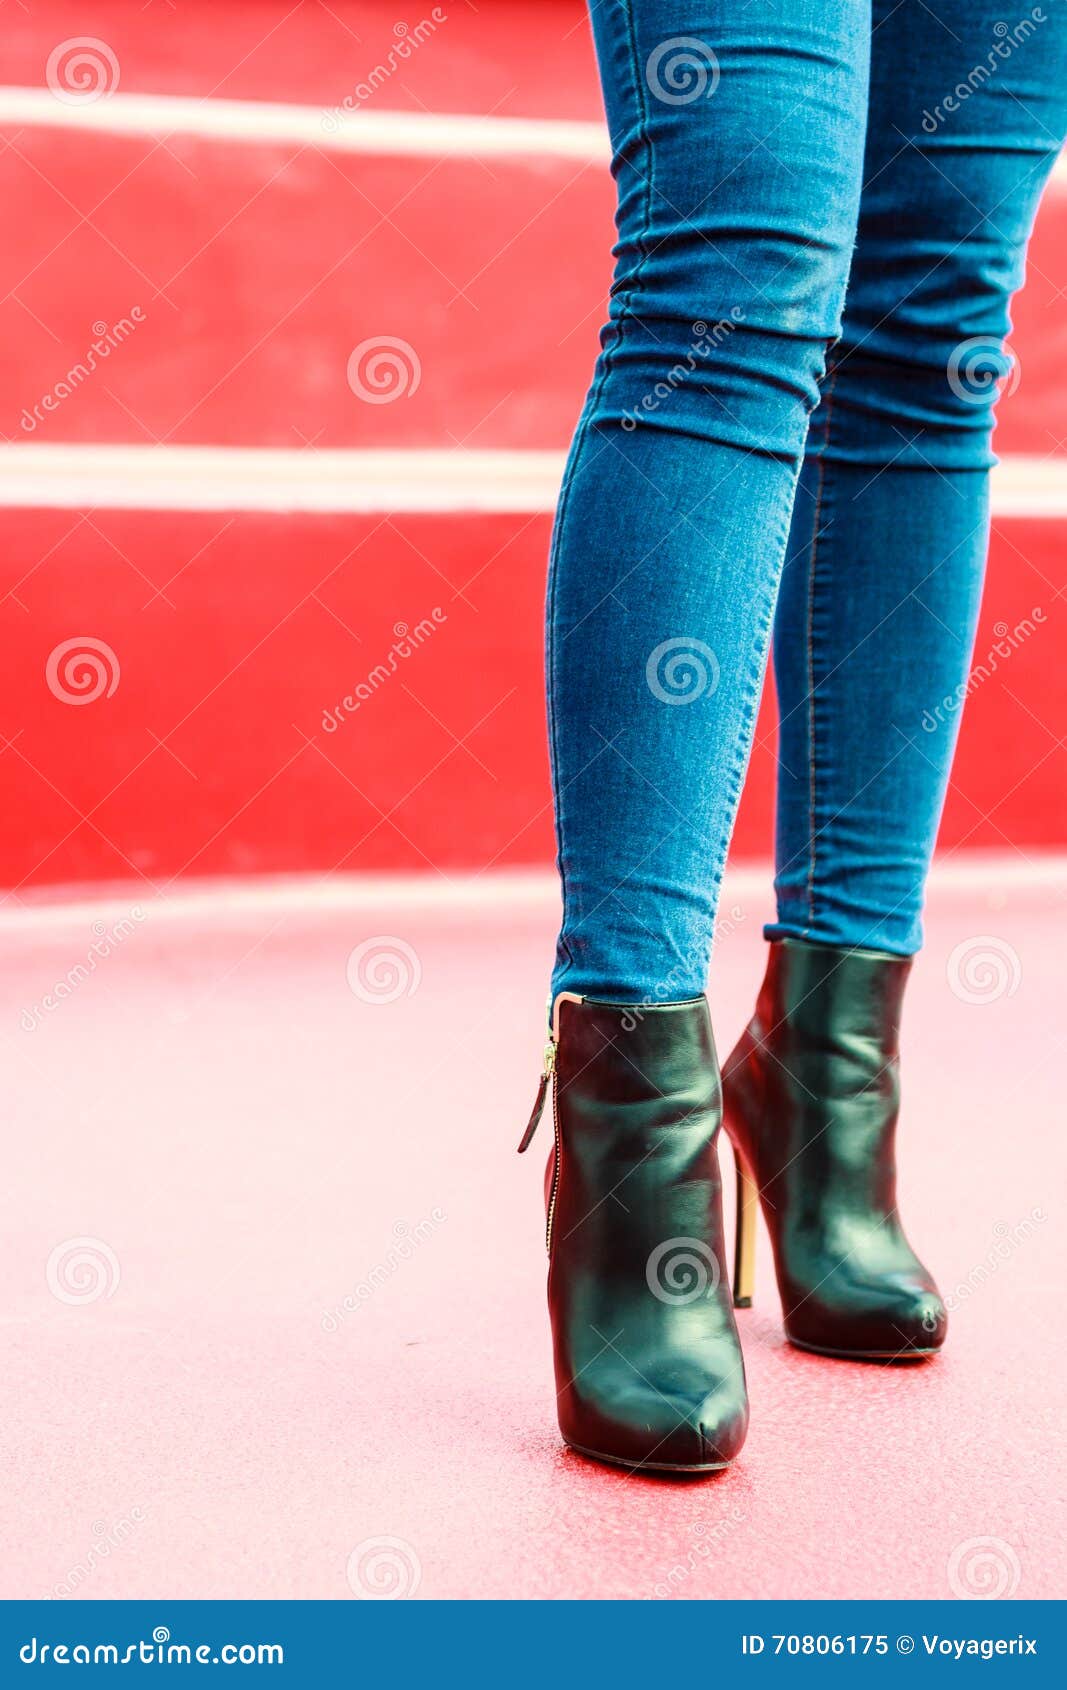 Woman Legs in Denim Pants Heels Boots Outdoor Stock Image - Image of ...